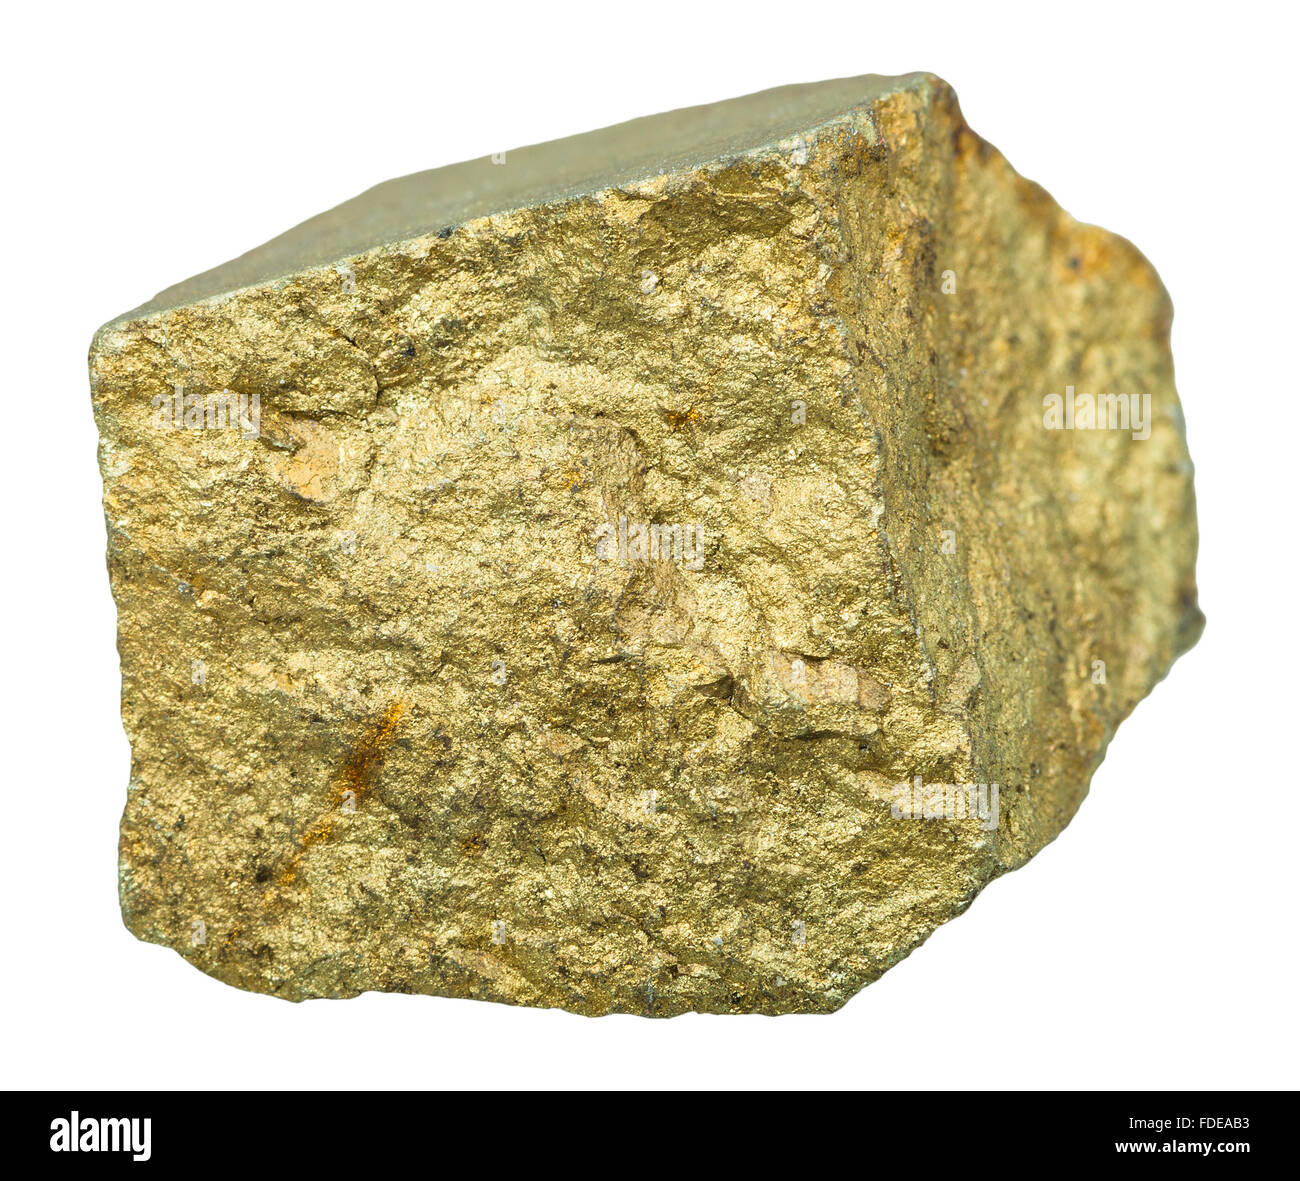 Makroaufnahmen Kollektion Naturstein - Messing-gelbe Chalkopyrit Mineral  Stein isoliert auf weißem Hintergrund Stockfotografie - Alamy